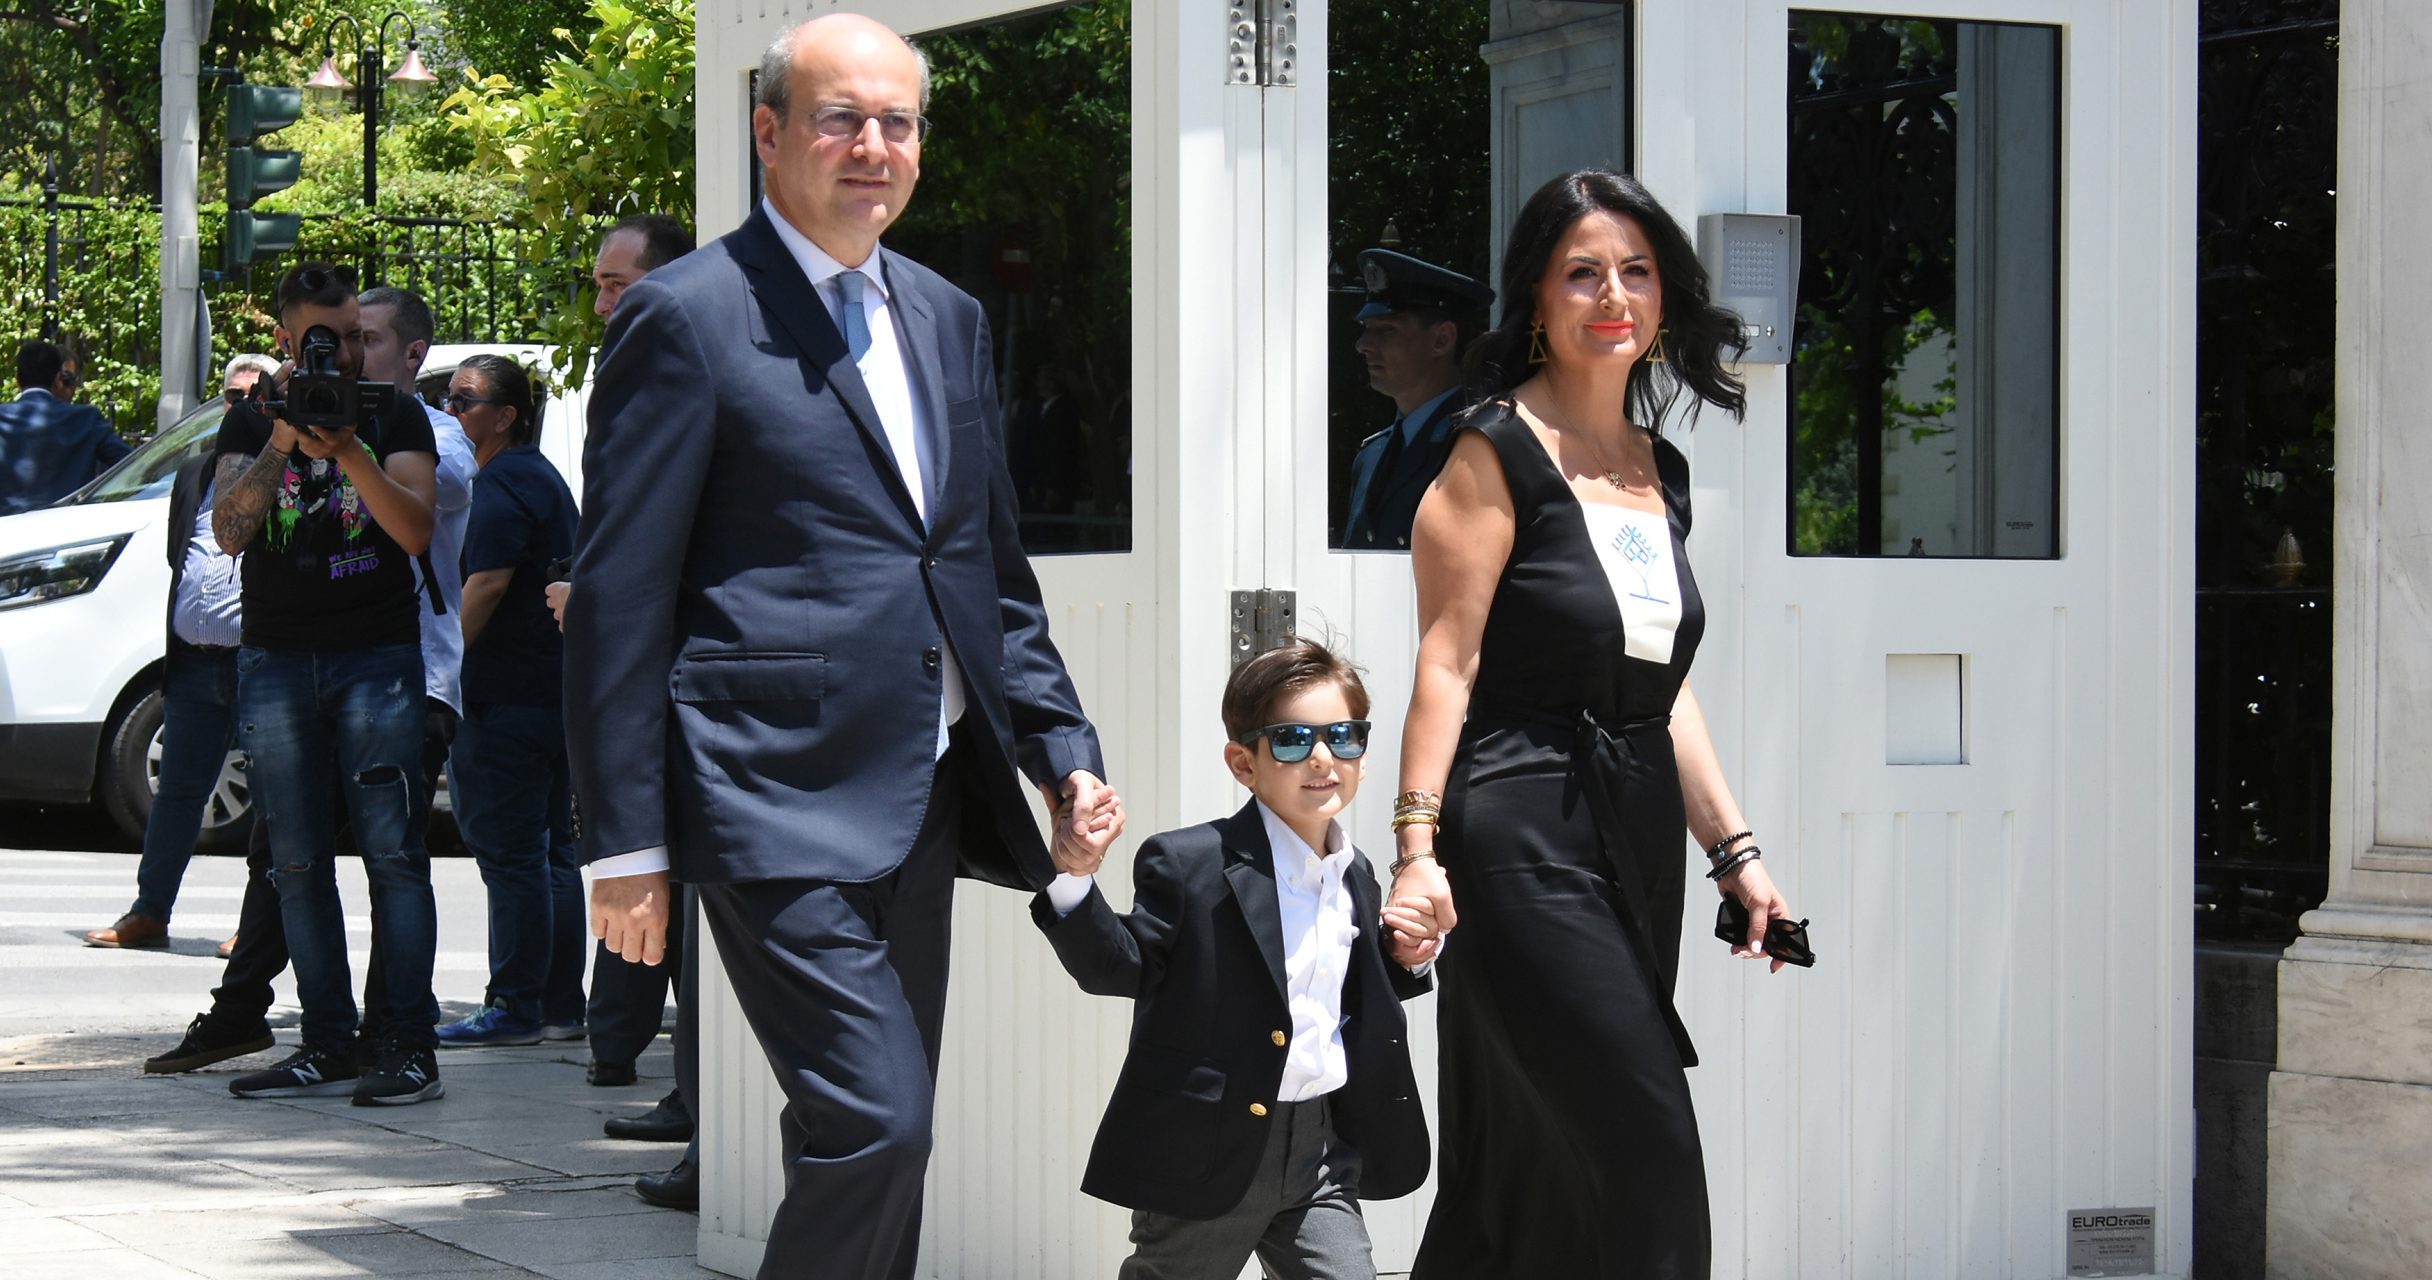 Γιάννης Χατζηδάκης: Ο 5.5 ετών γιος του Κωστή Χατζηδάκη με γυαλιά ηλίου ''έκλεψε" την παράσταση στο Προεδρικό Μέγαρο